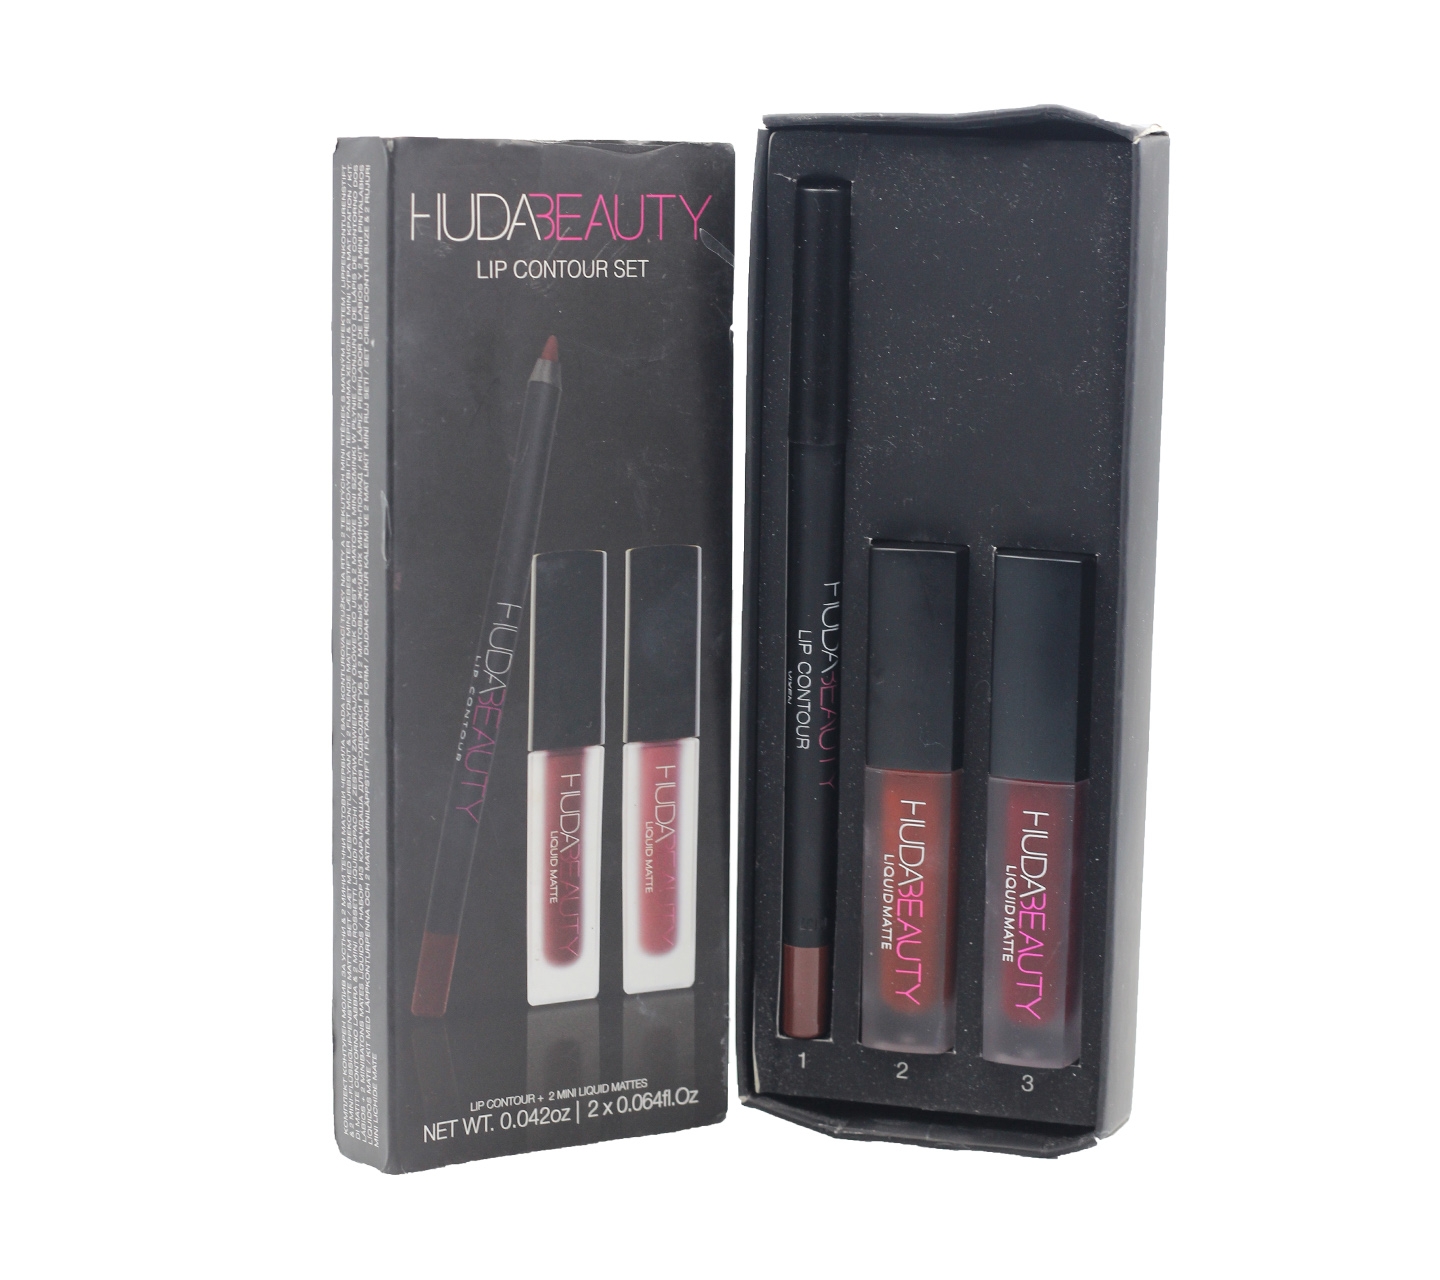 Huda Beauty Lip Contour + Mini Liquid Matters Vixen & Famouse Sets and Palette